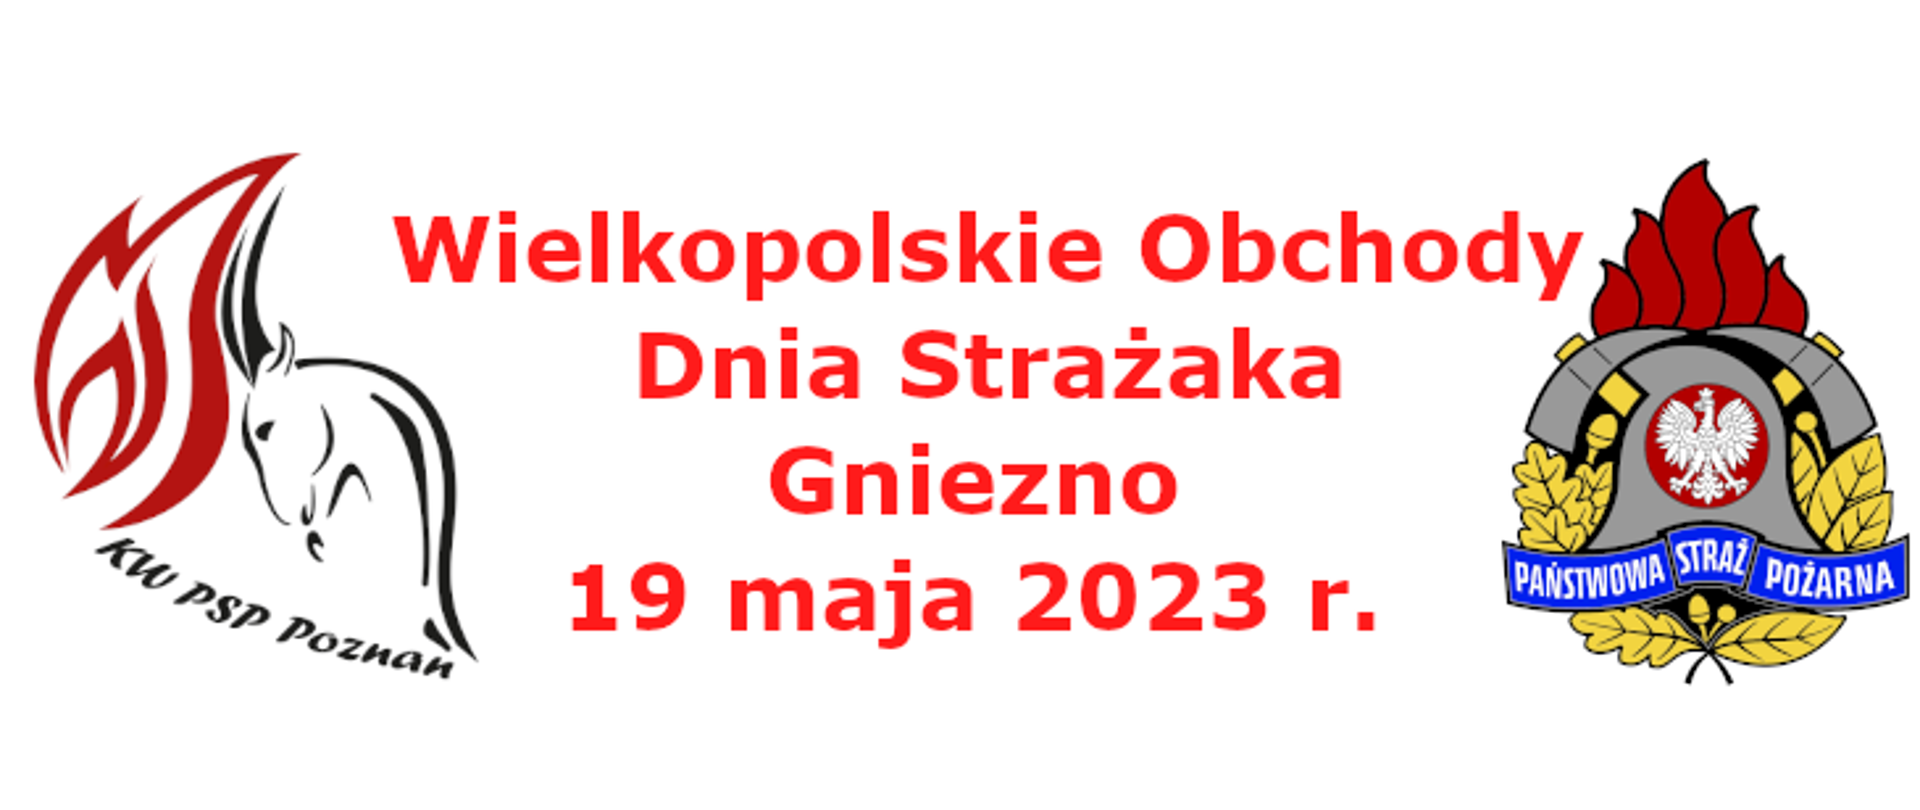 Zaproszenie na Wielkopolskie Wojewódzkie Obchody Dnia Strażaka- Gniezno 19.05.2023